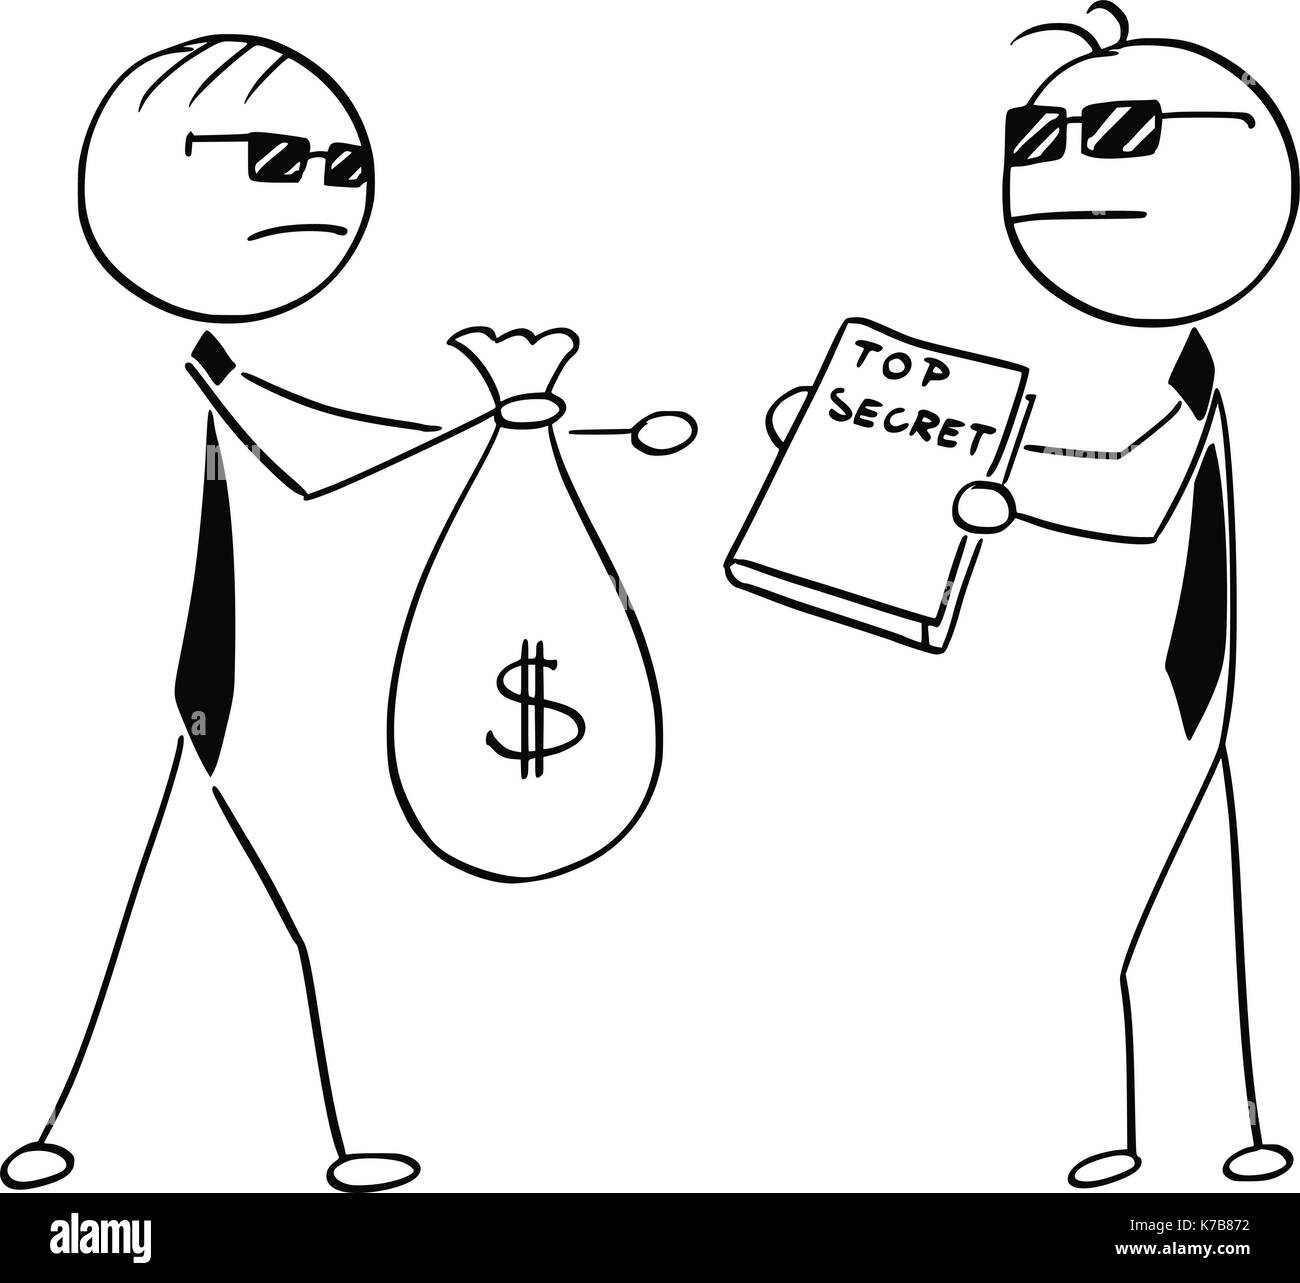 Cartoon stick man illustration de deux agents espions business men vendre changer top secret pour sac d'argent. Illustration de Vecteur